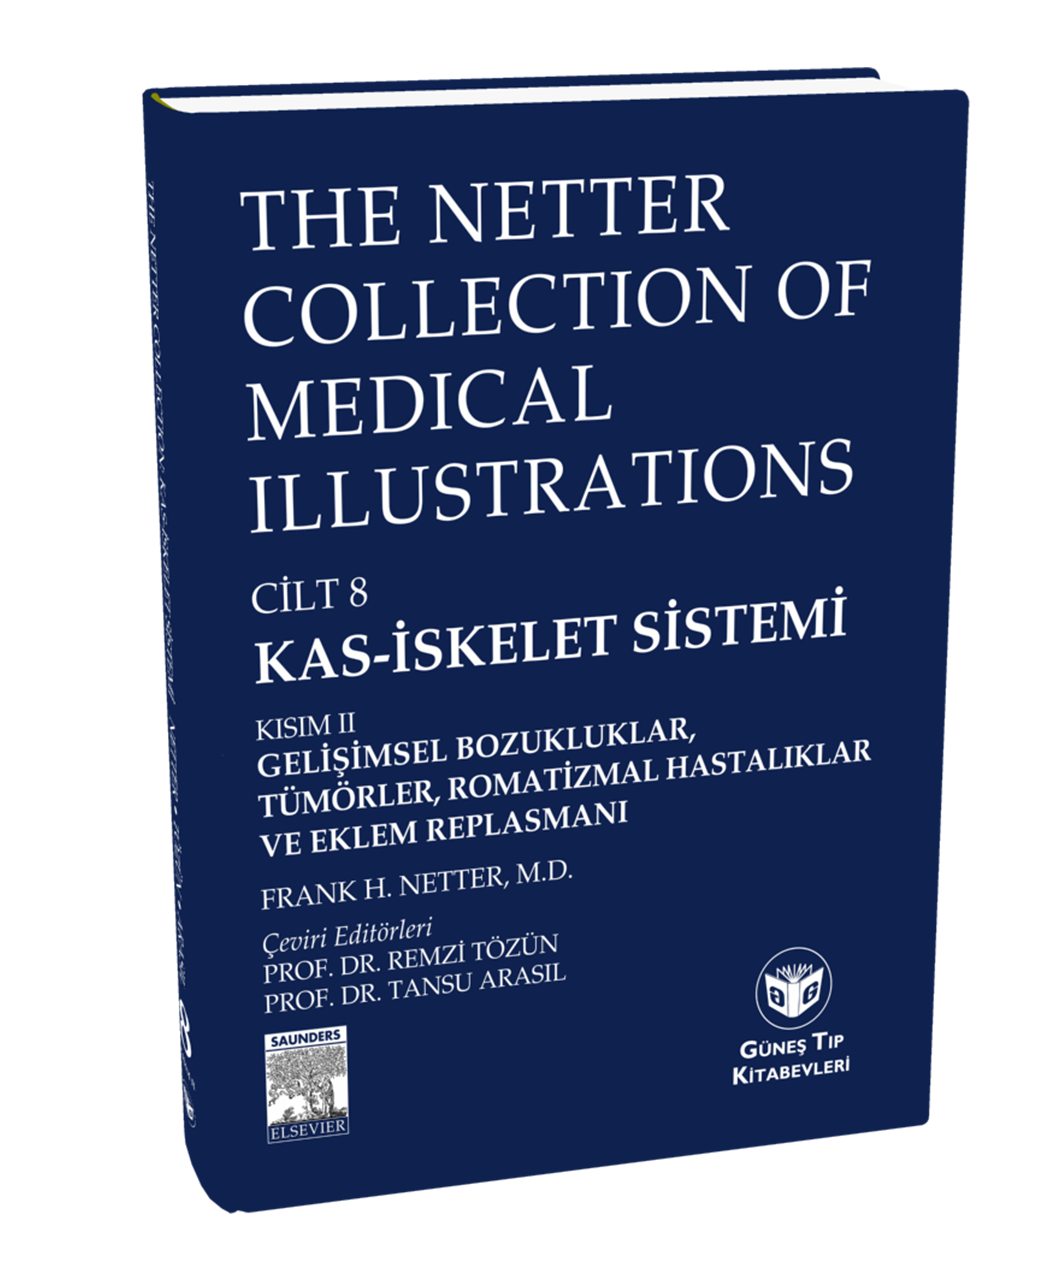 The Netter Collection of Medical Illustrations Kas-İskelet Sistemi: Gelişimsel Boz., Tümörler, Romatizmal Hast. ve Eklem Replasmanı